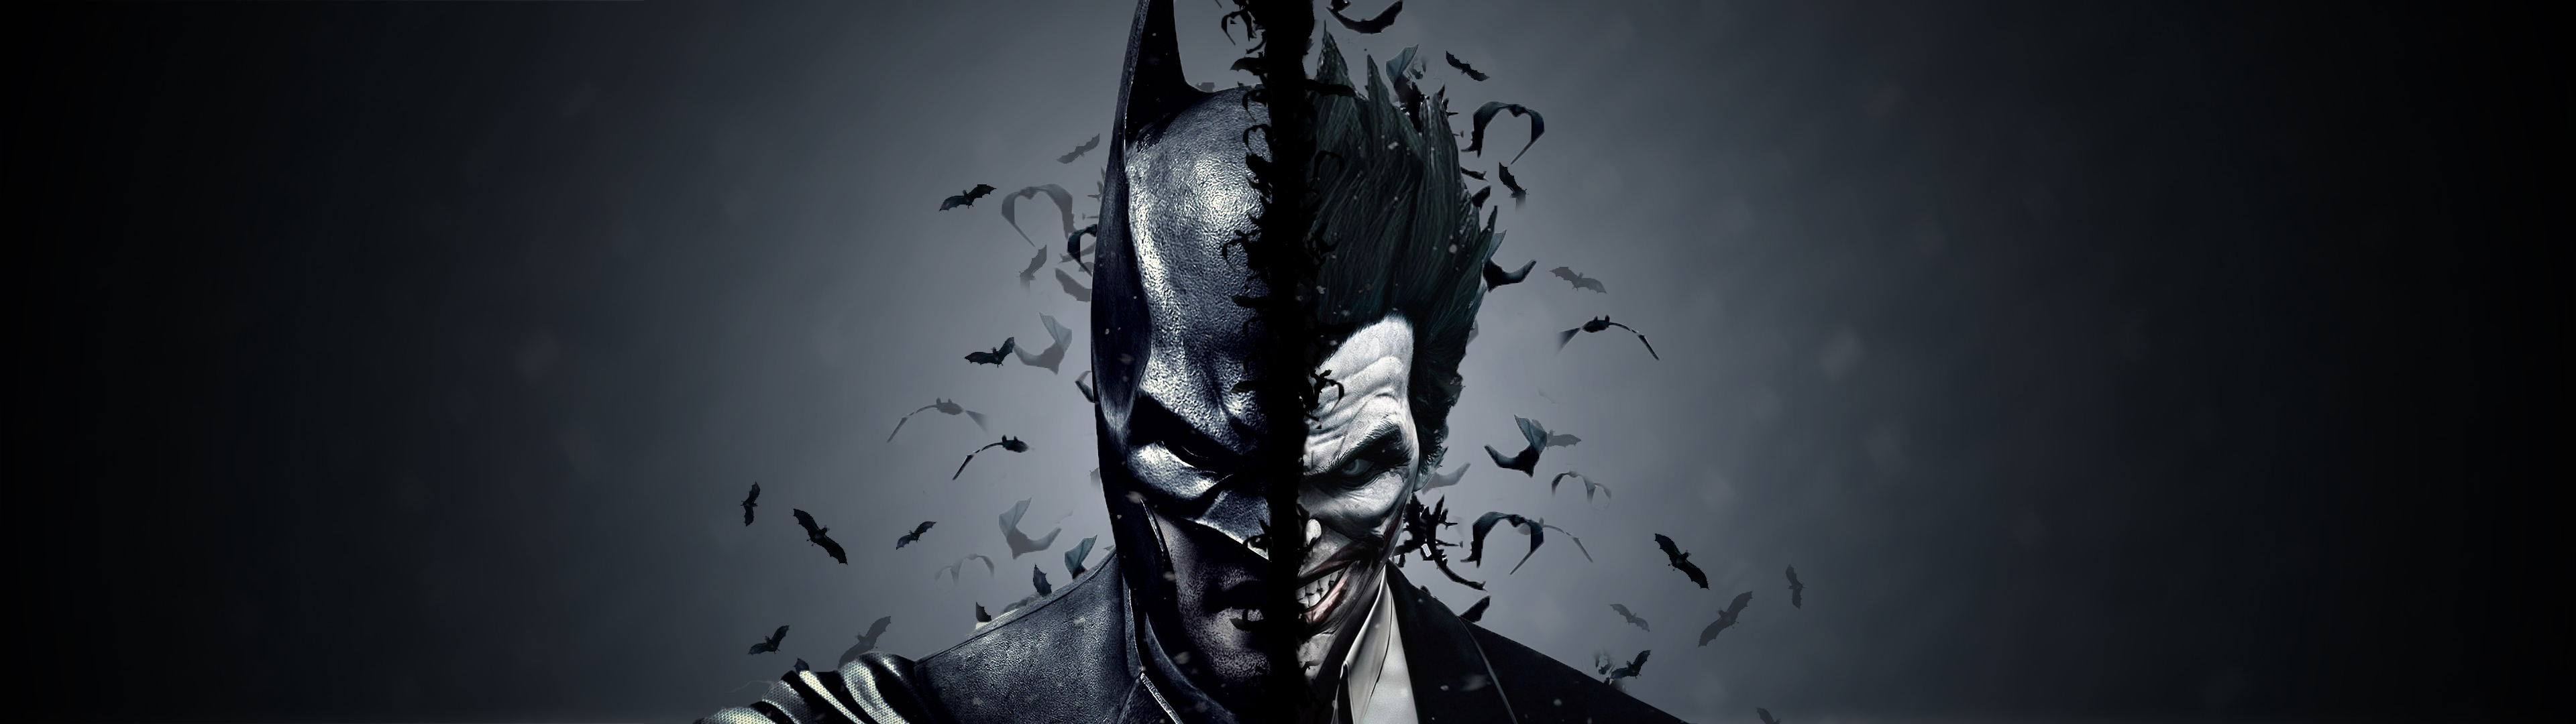 Batman and the joker wallpaper